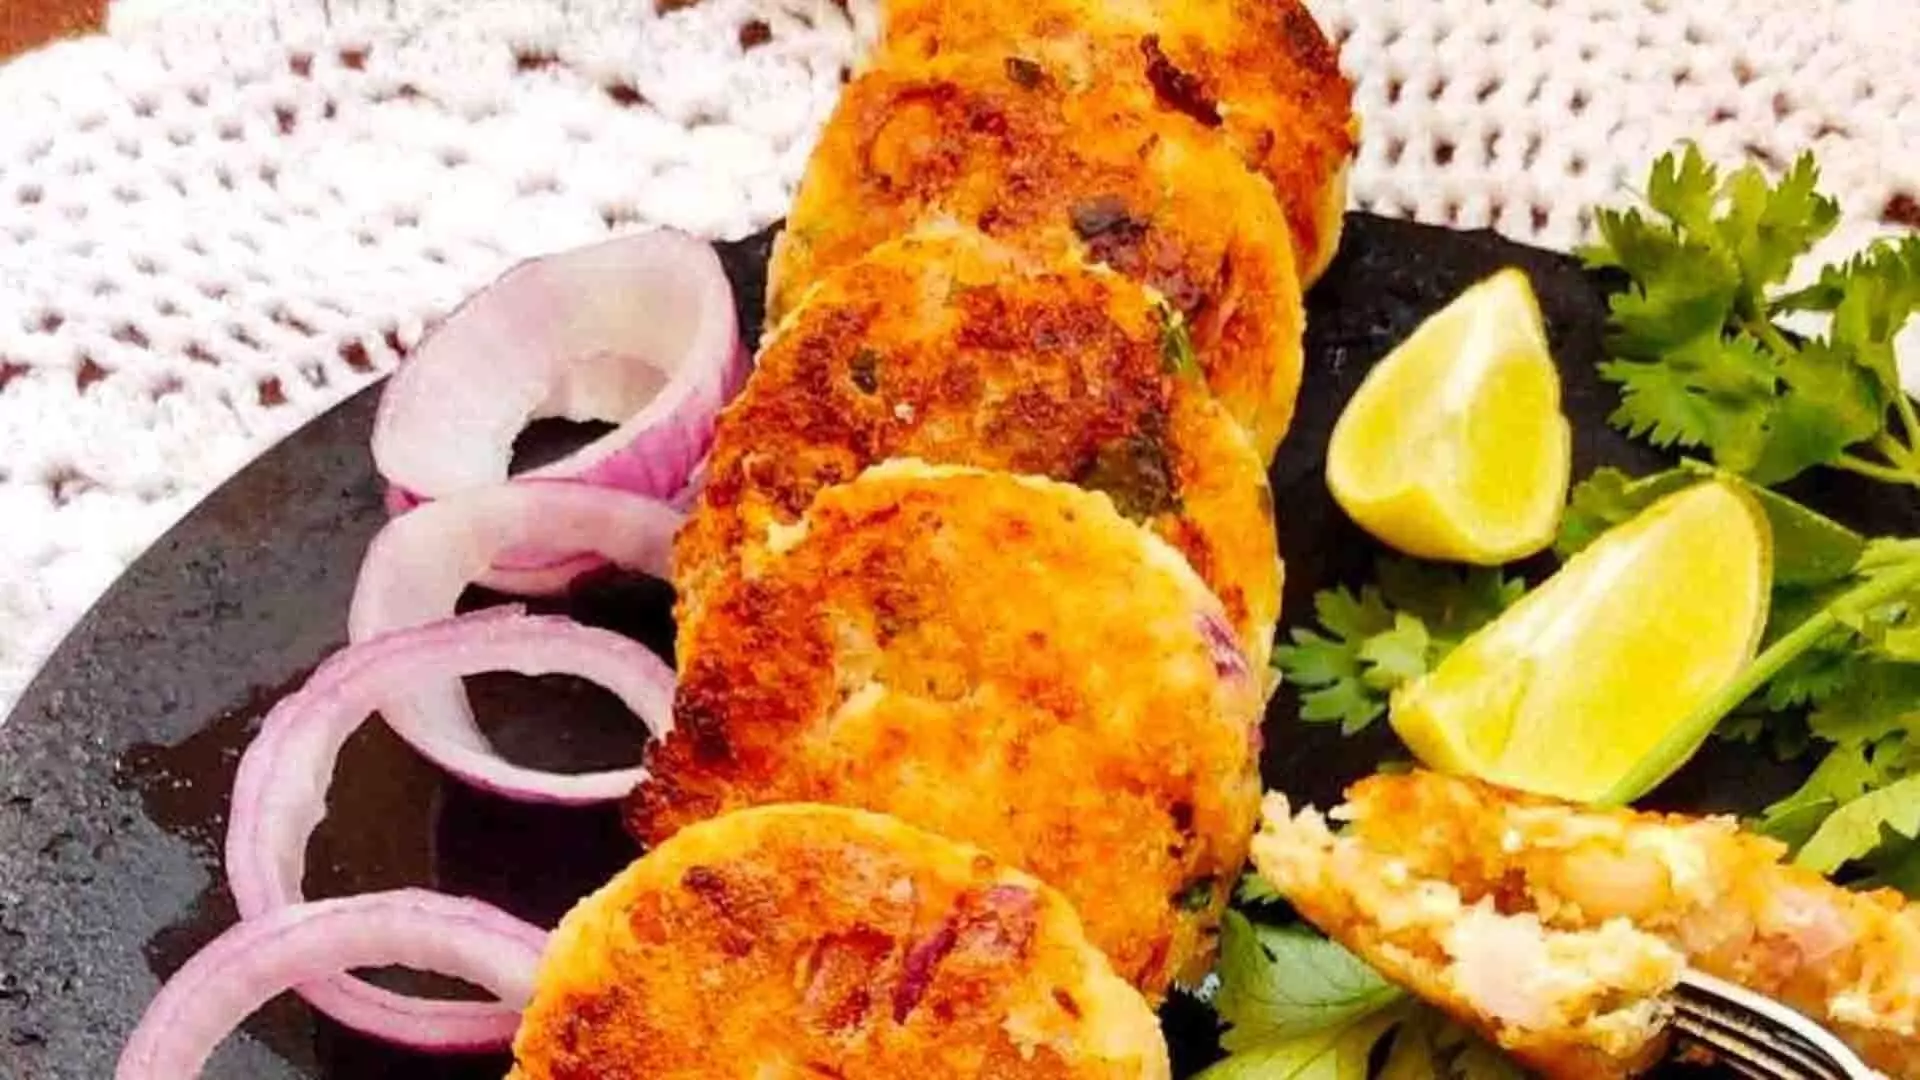 दही के कबाब देंगे बेहतरीन स्वाद का जायका, जानें बनाने का तरीका